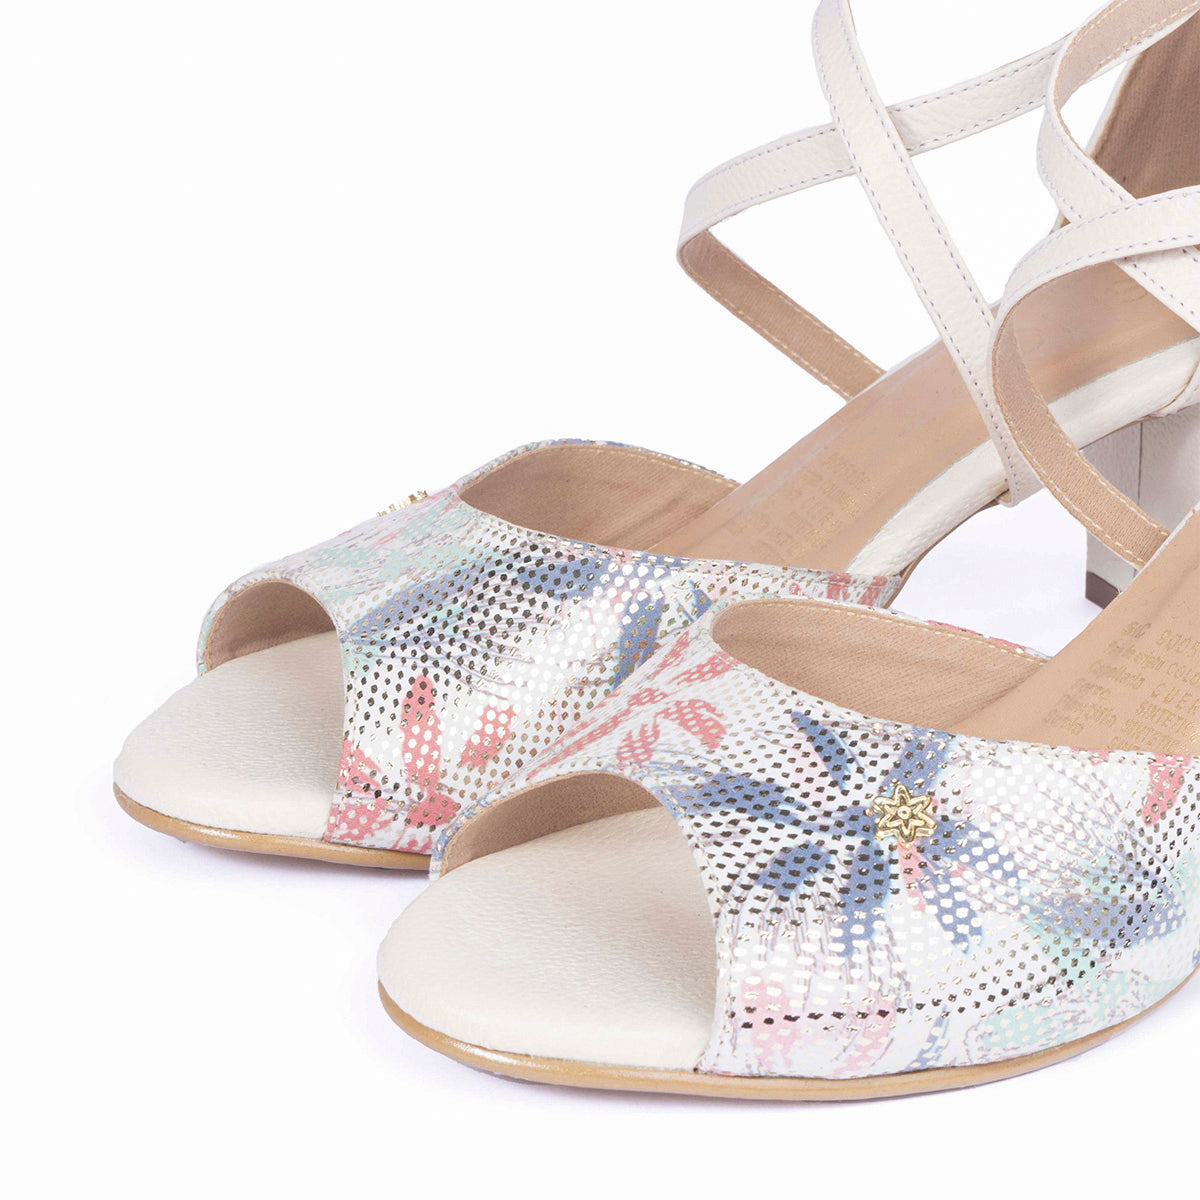 Sandalias de cuero color beige con tacón, textura floral y correas cruzadas